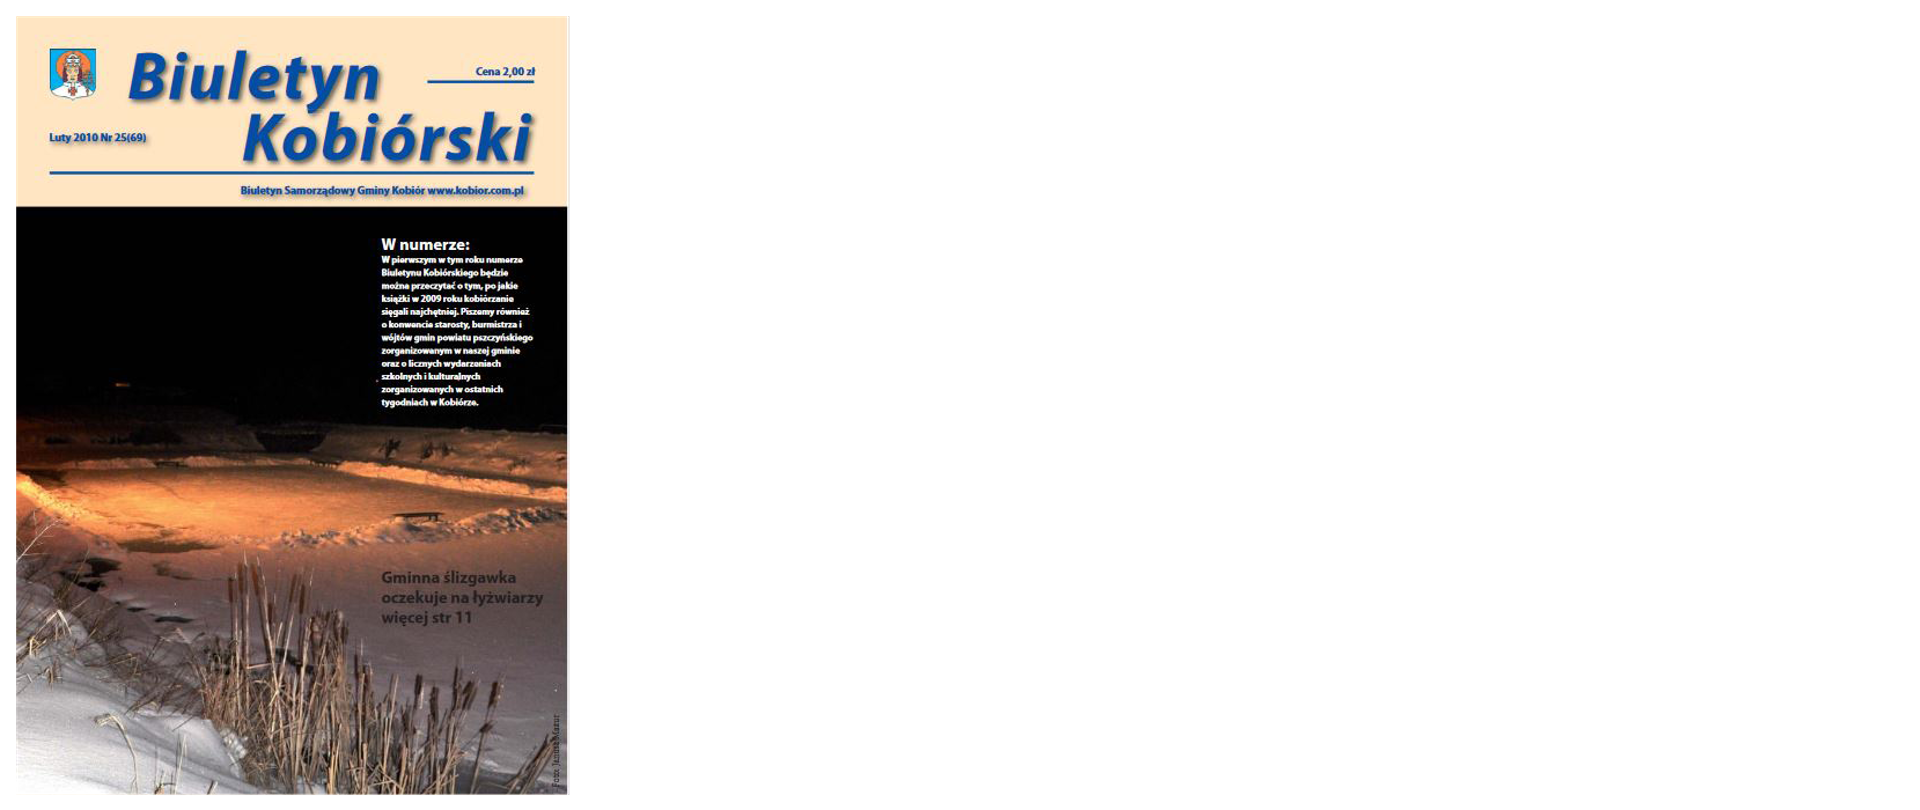 Zdjęcie przedstawia okładkę biuletynu kobiórskiego z lutego 2010 roku na której widać ślizgawkę.